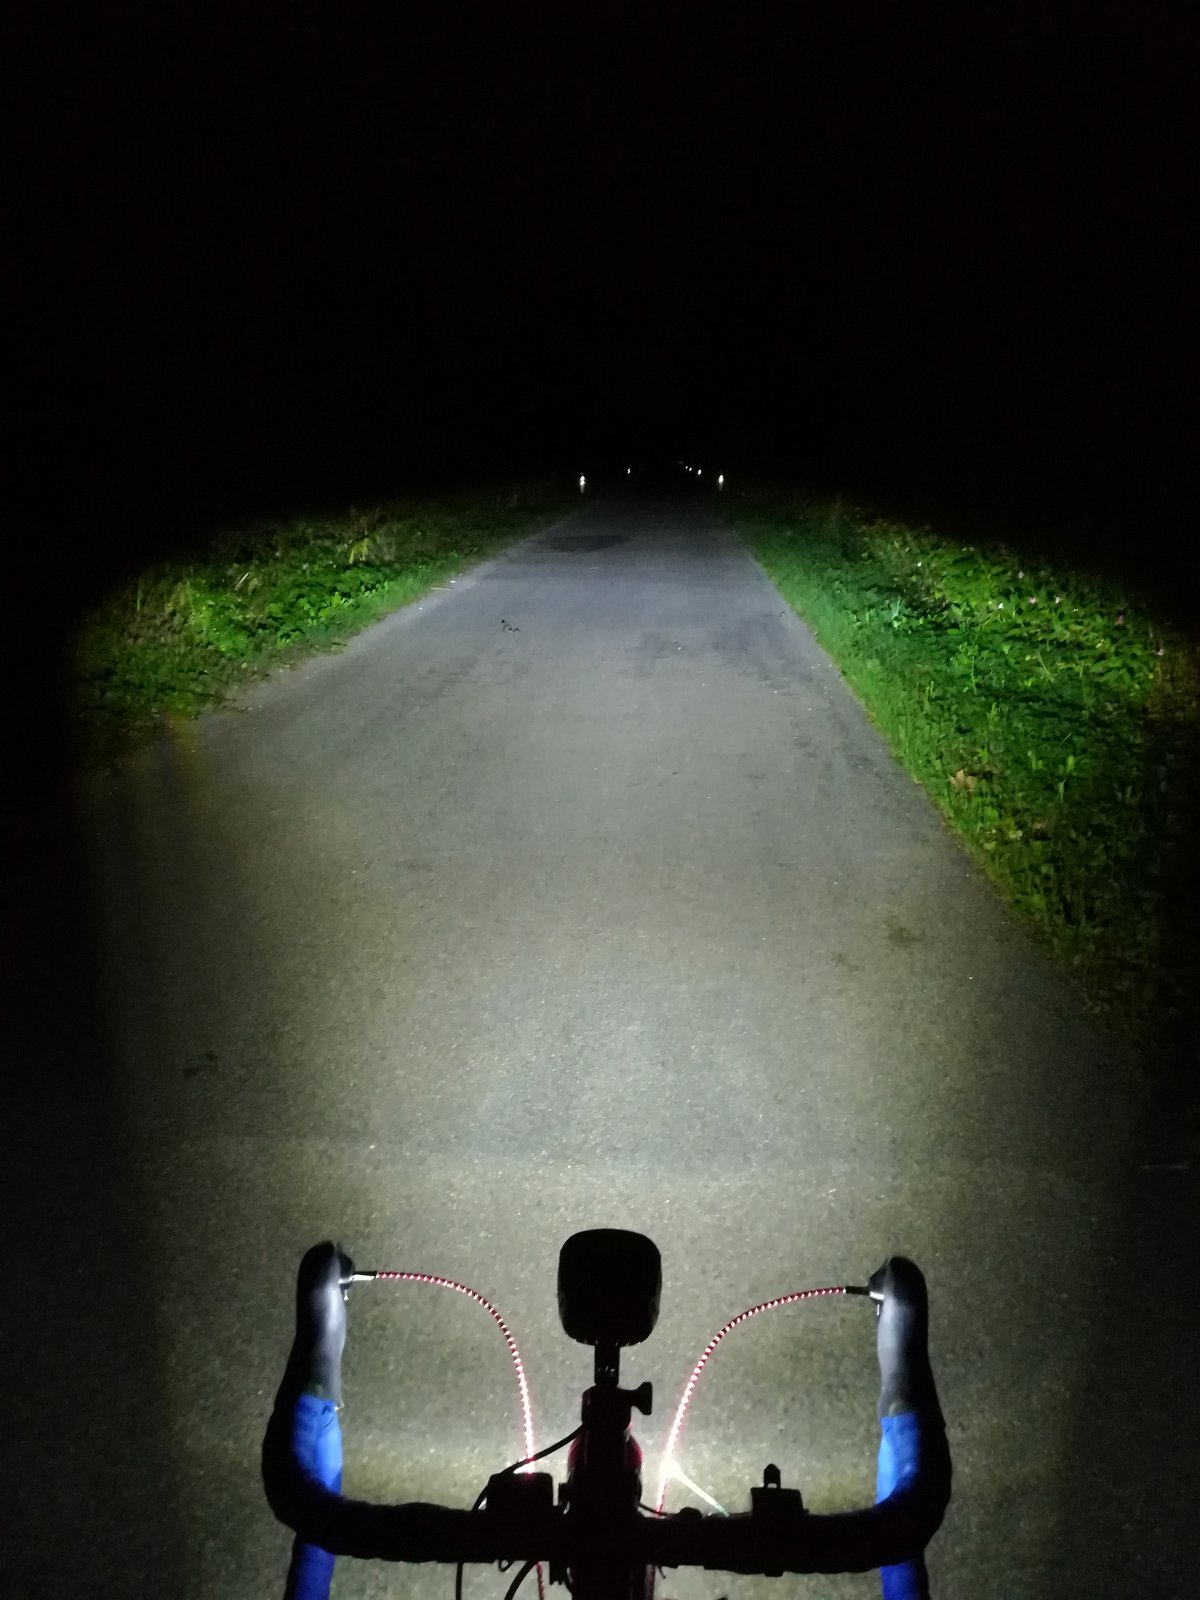 Busch & Müller, Beleuchtung, LED-Scheinwerfer für E-Bikes, LUMOTEC IQ-XL,  mit Fernlichtfunktion, Abblendlicht: 300